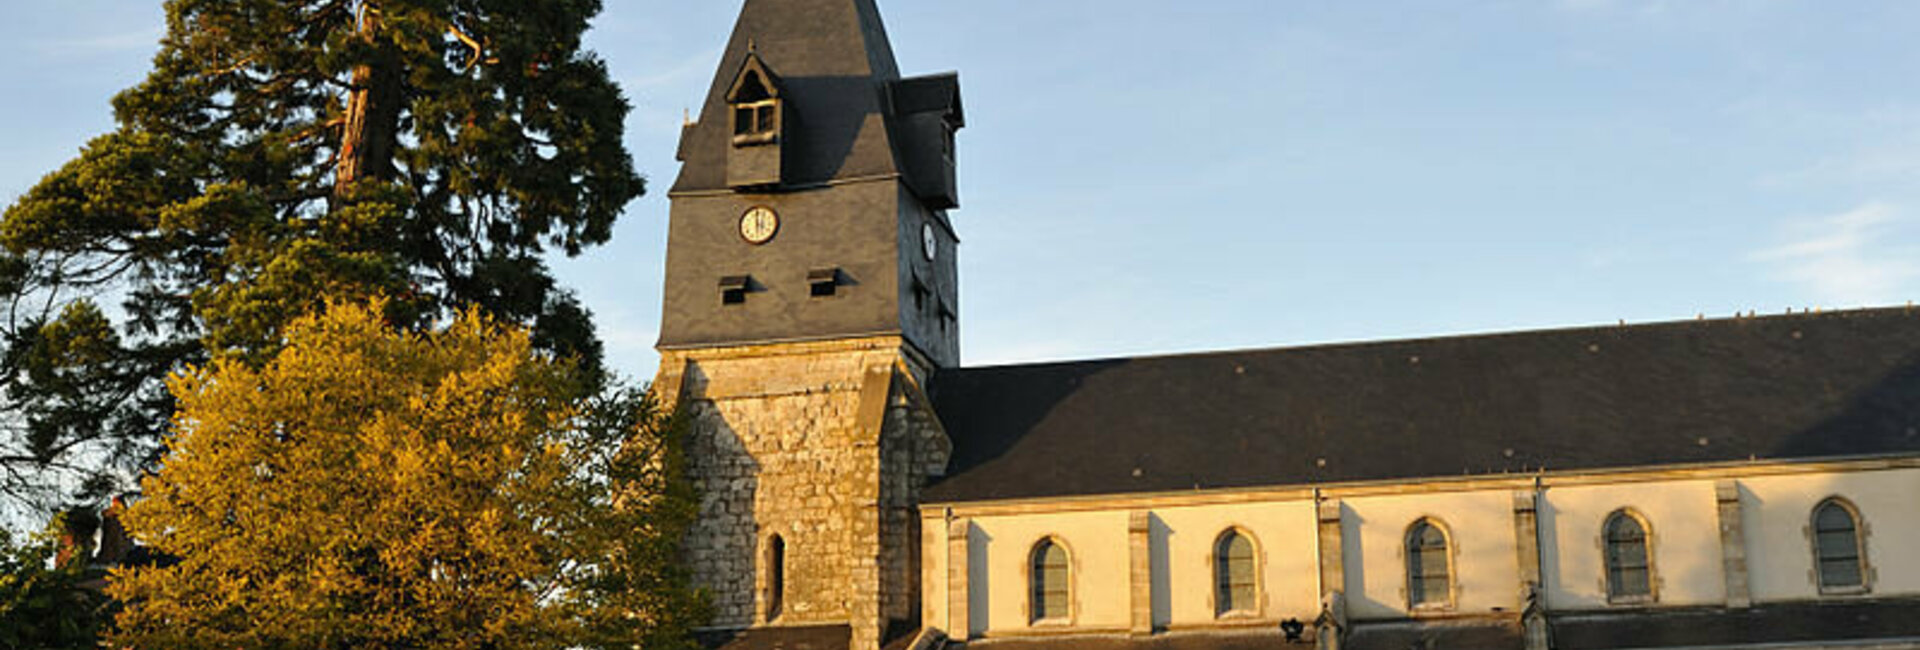 Histoire Aschères-le-Marché Patrimoine Mairie Loiret